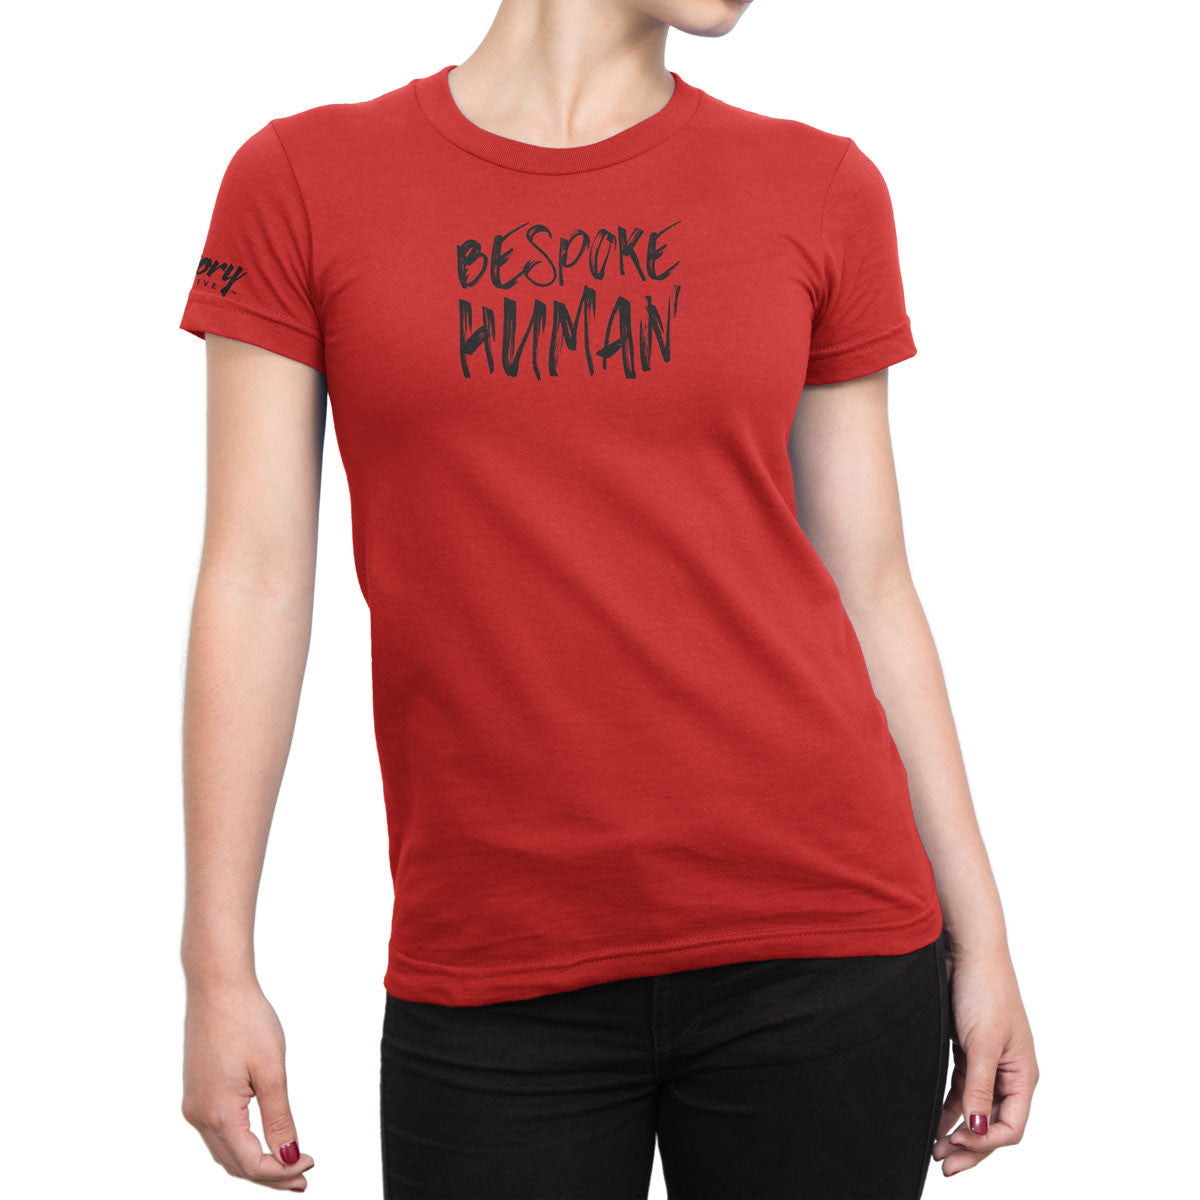 Bespoke Human — Women's T-Shirt (Red)